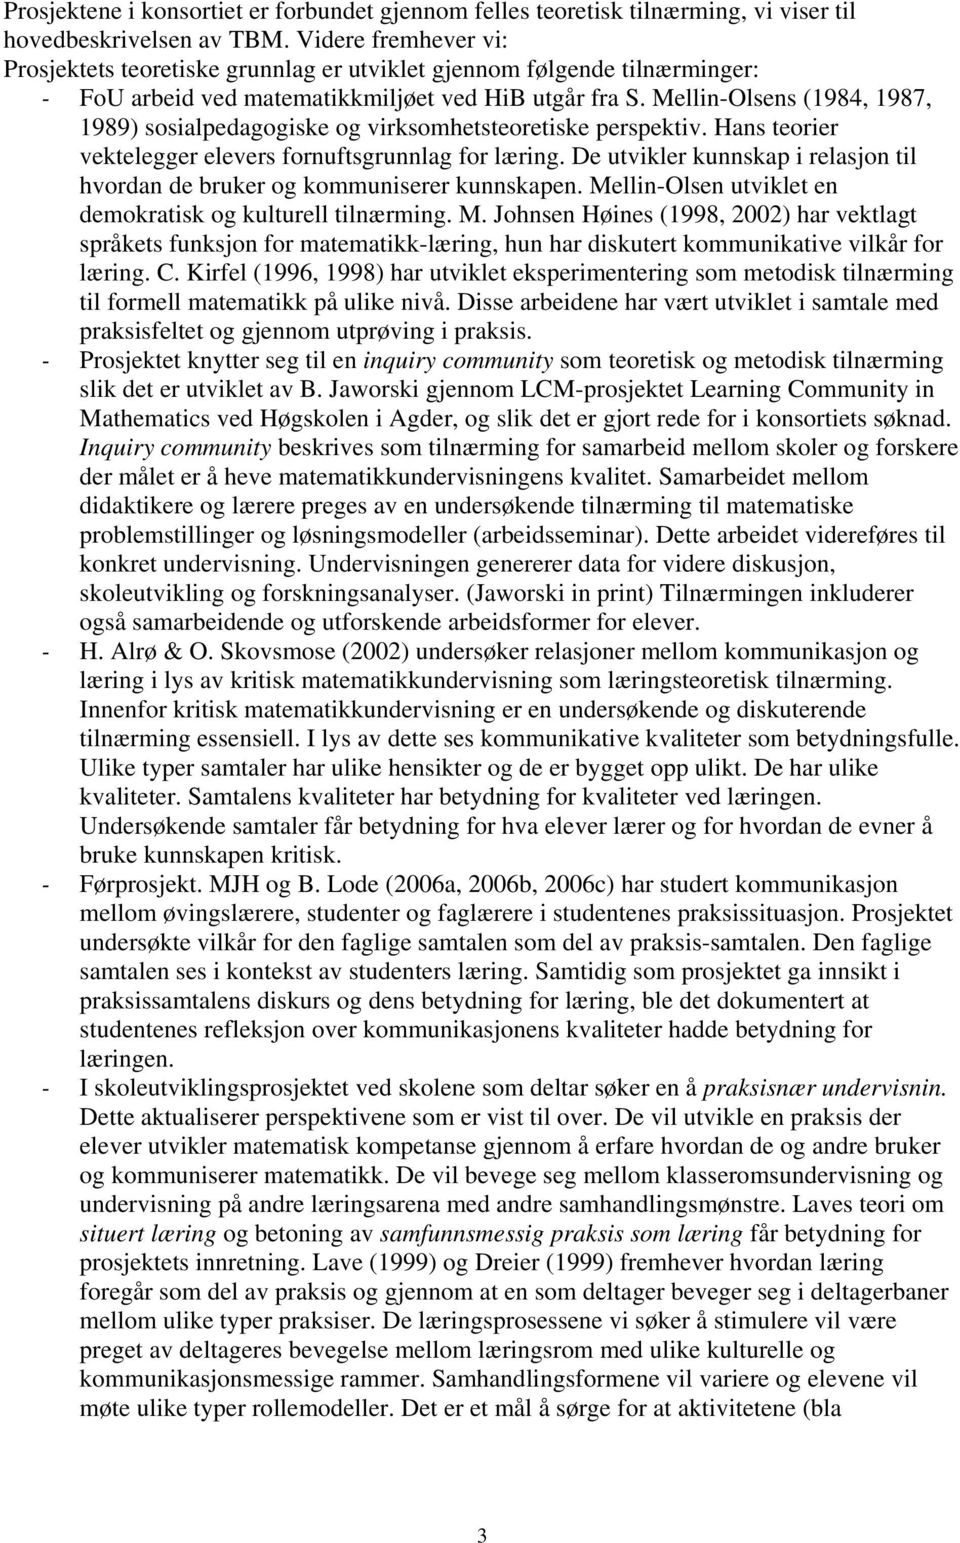 Mellin-Olsens (1984, 1987, 1989) sosialpedagogiske og virksomhetsteoretiske perspektiv. Hans teorier vektelegger elevers fornuftsgrunnlag for læring.